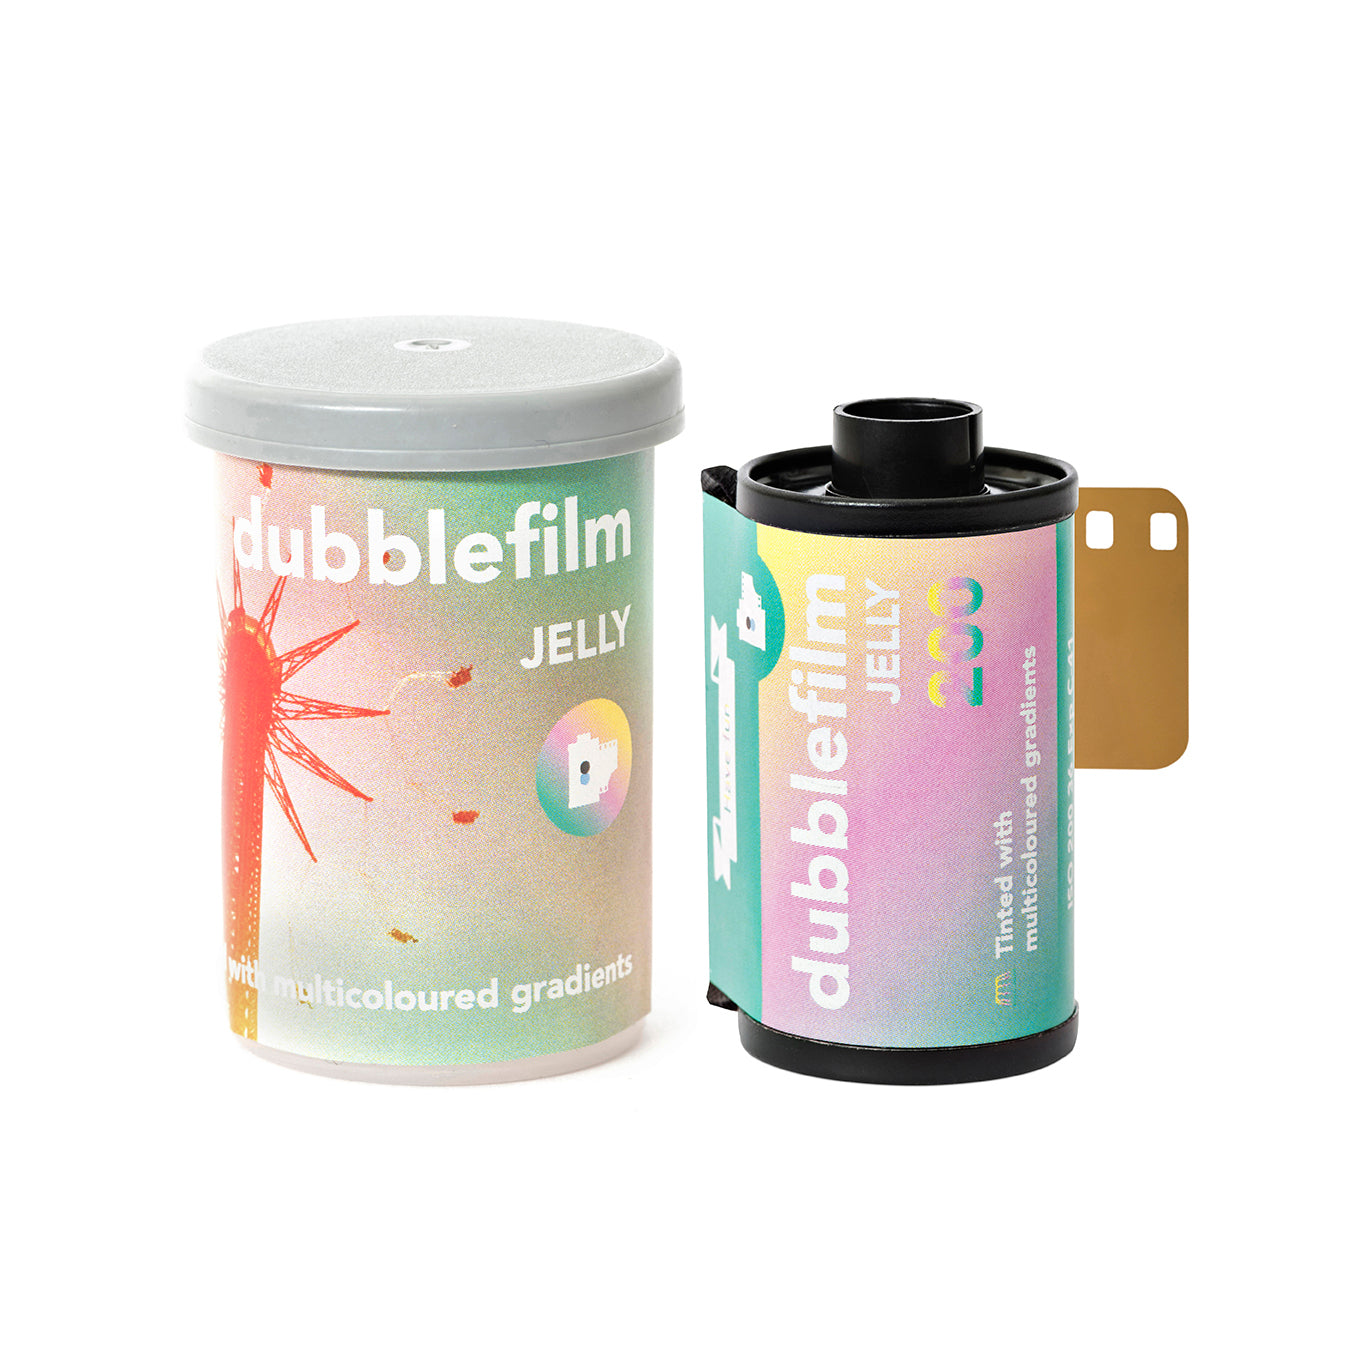 Dubblefilm Jelly 400 ISO